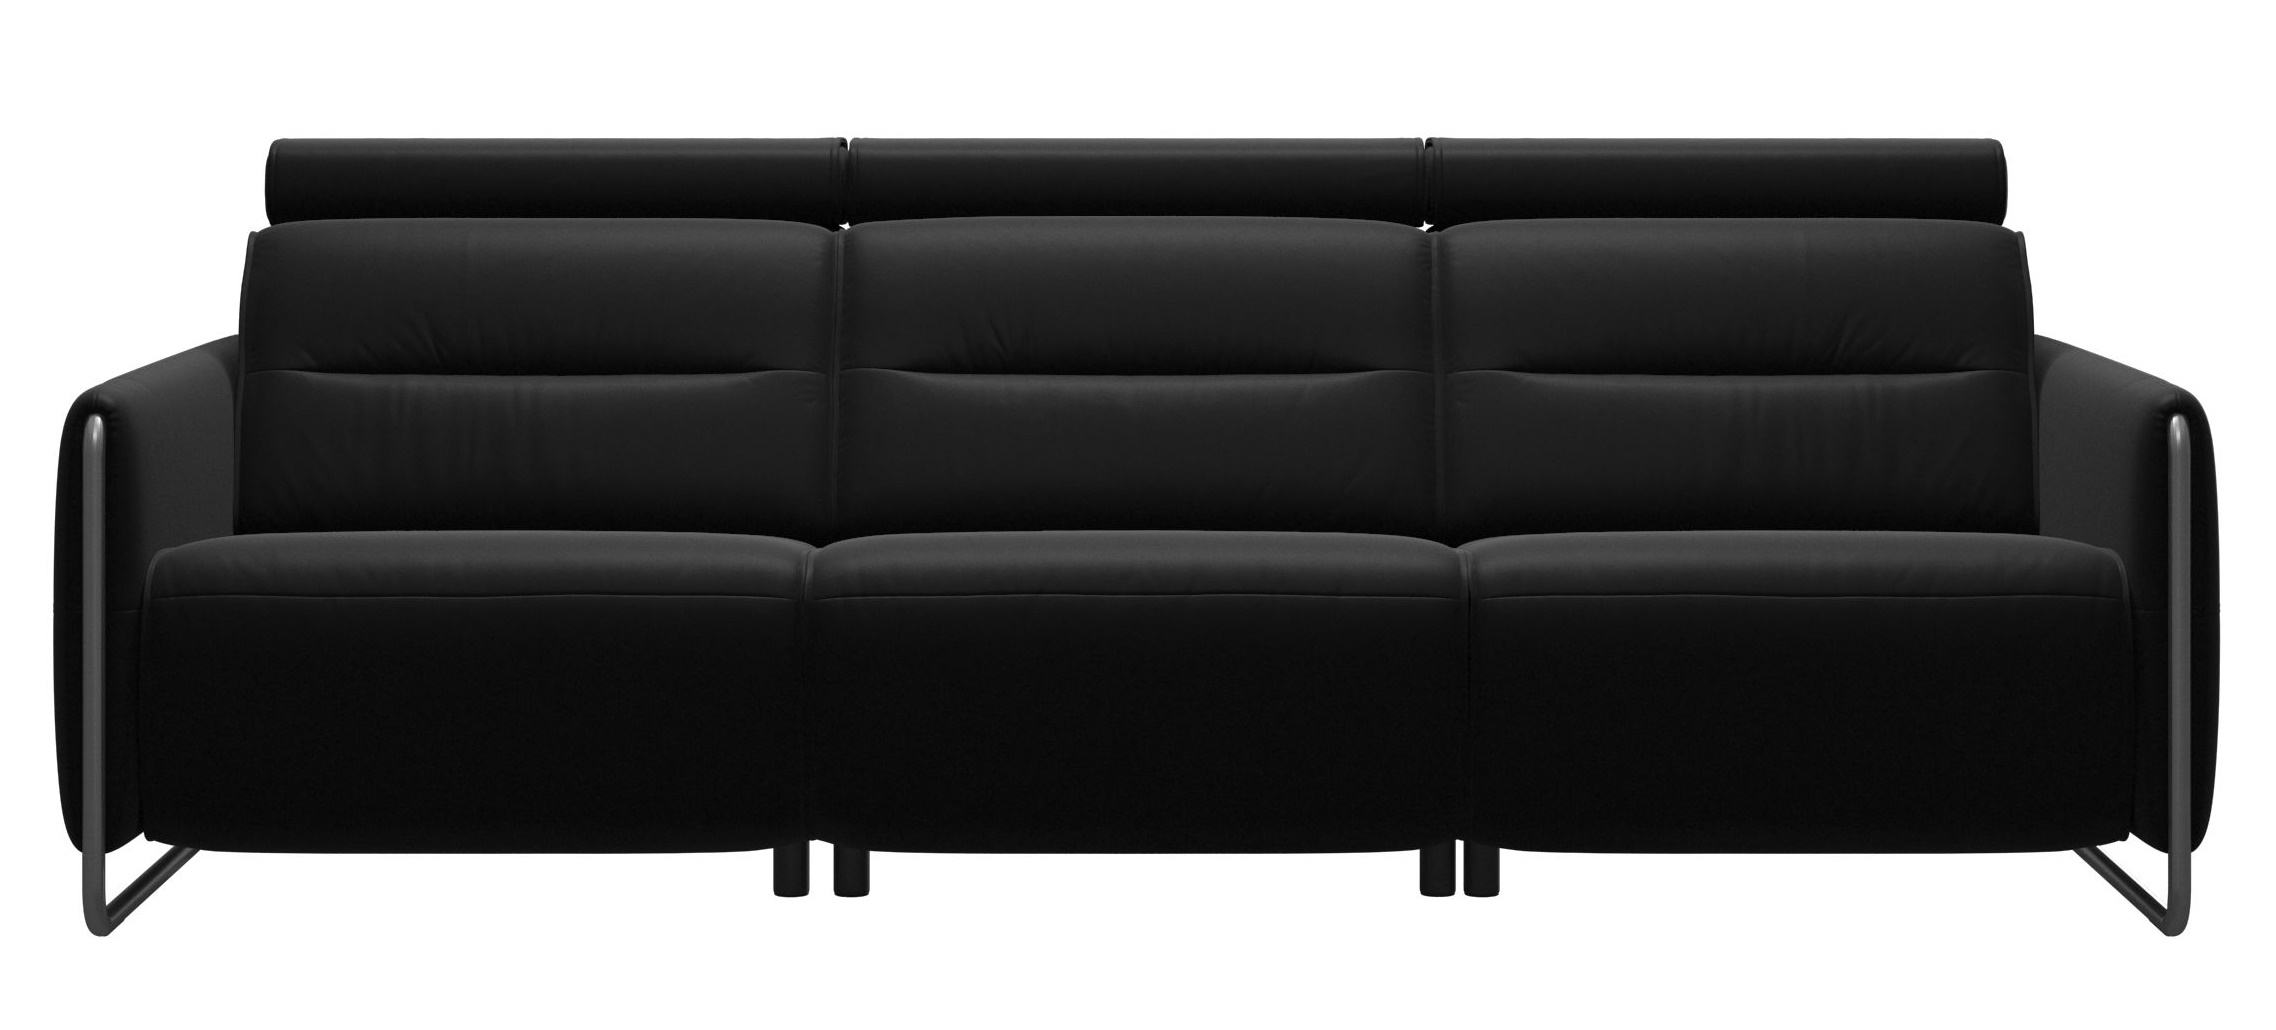 Canapea cu 3 locuri Stressless Emily Arm Steel reclinere laterale brate crom tapiterie piele Batick Black Arm